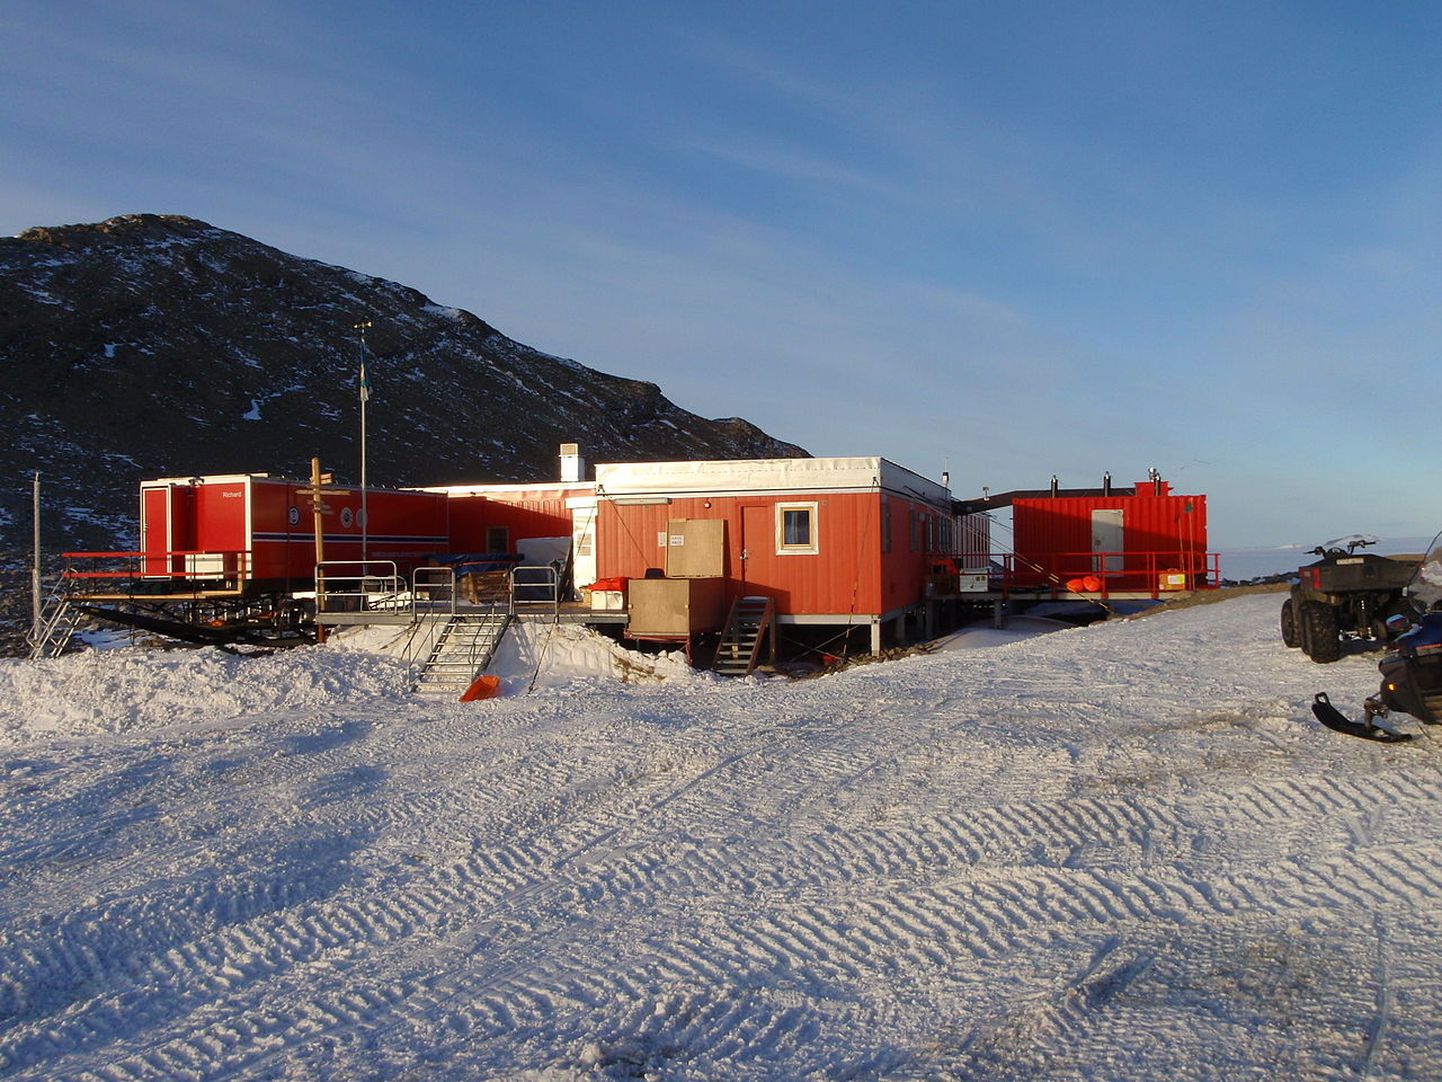 Полярная станция на Земле Королевы Мод в Антарктиде. Иллюстративное фото.